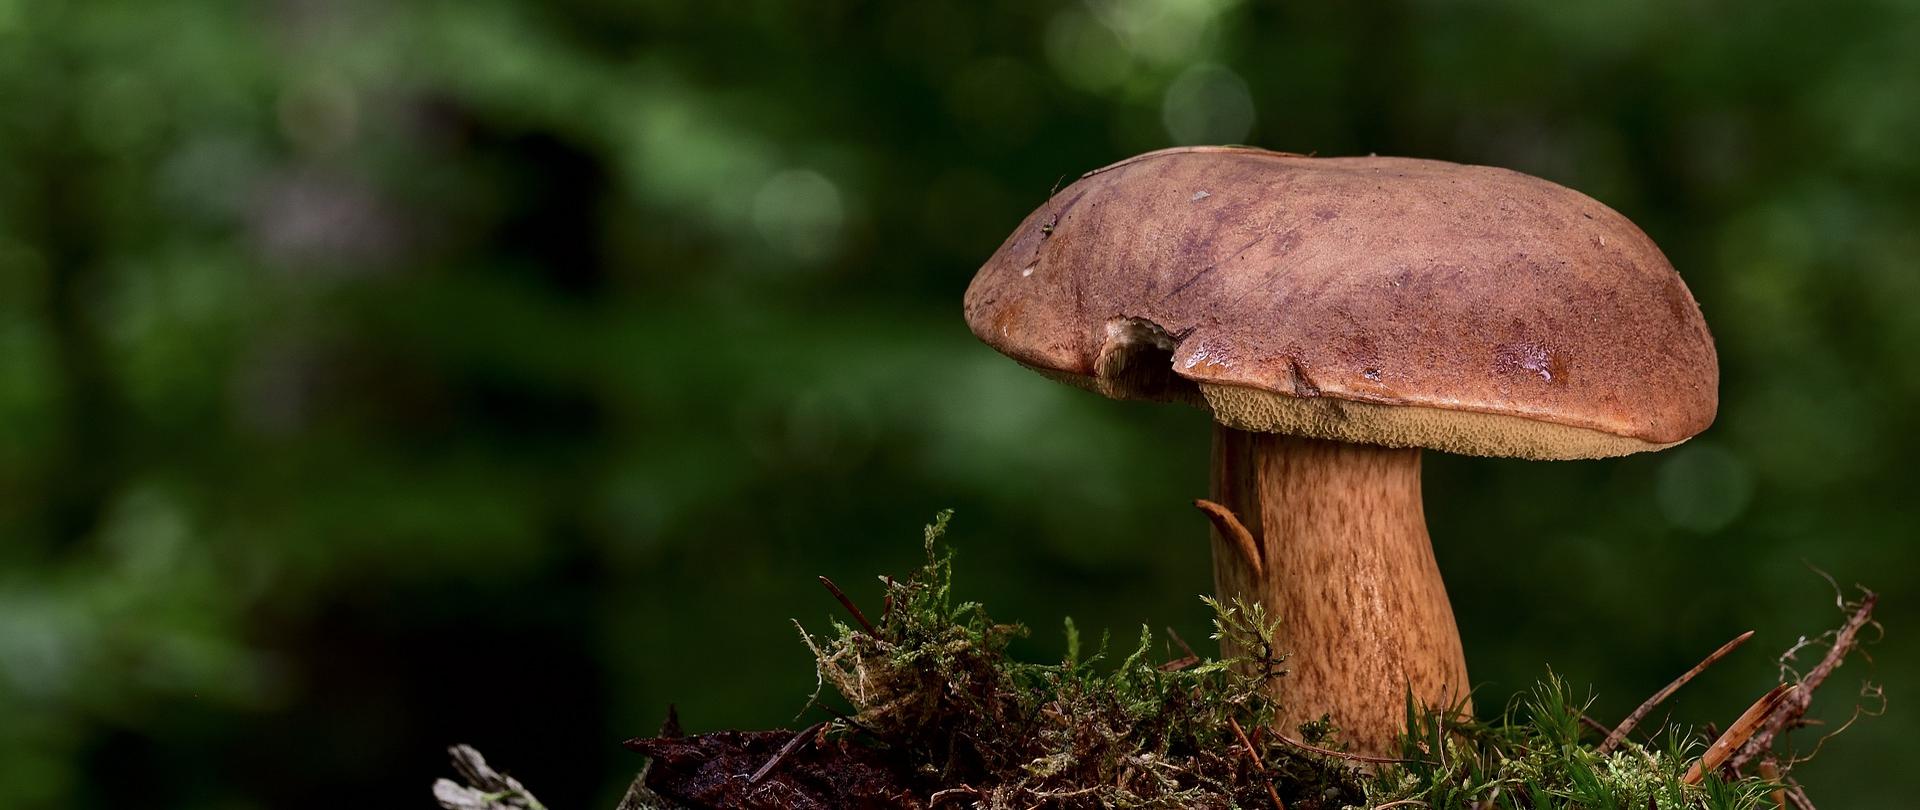 Zdjęcie przedstawiające grzyba jadalnego rosnącego w lesie